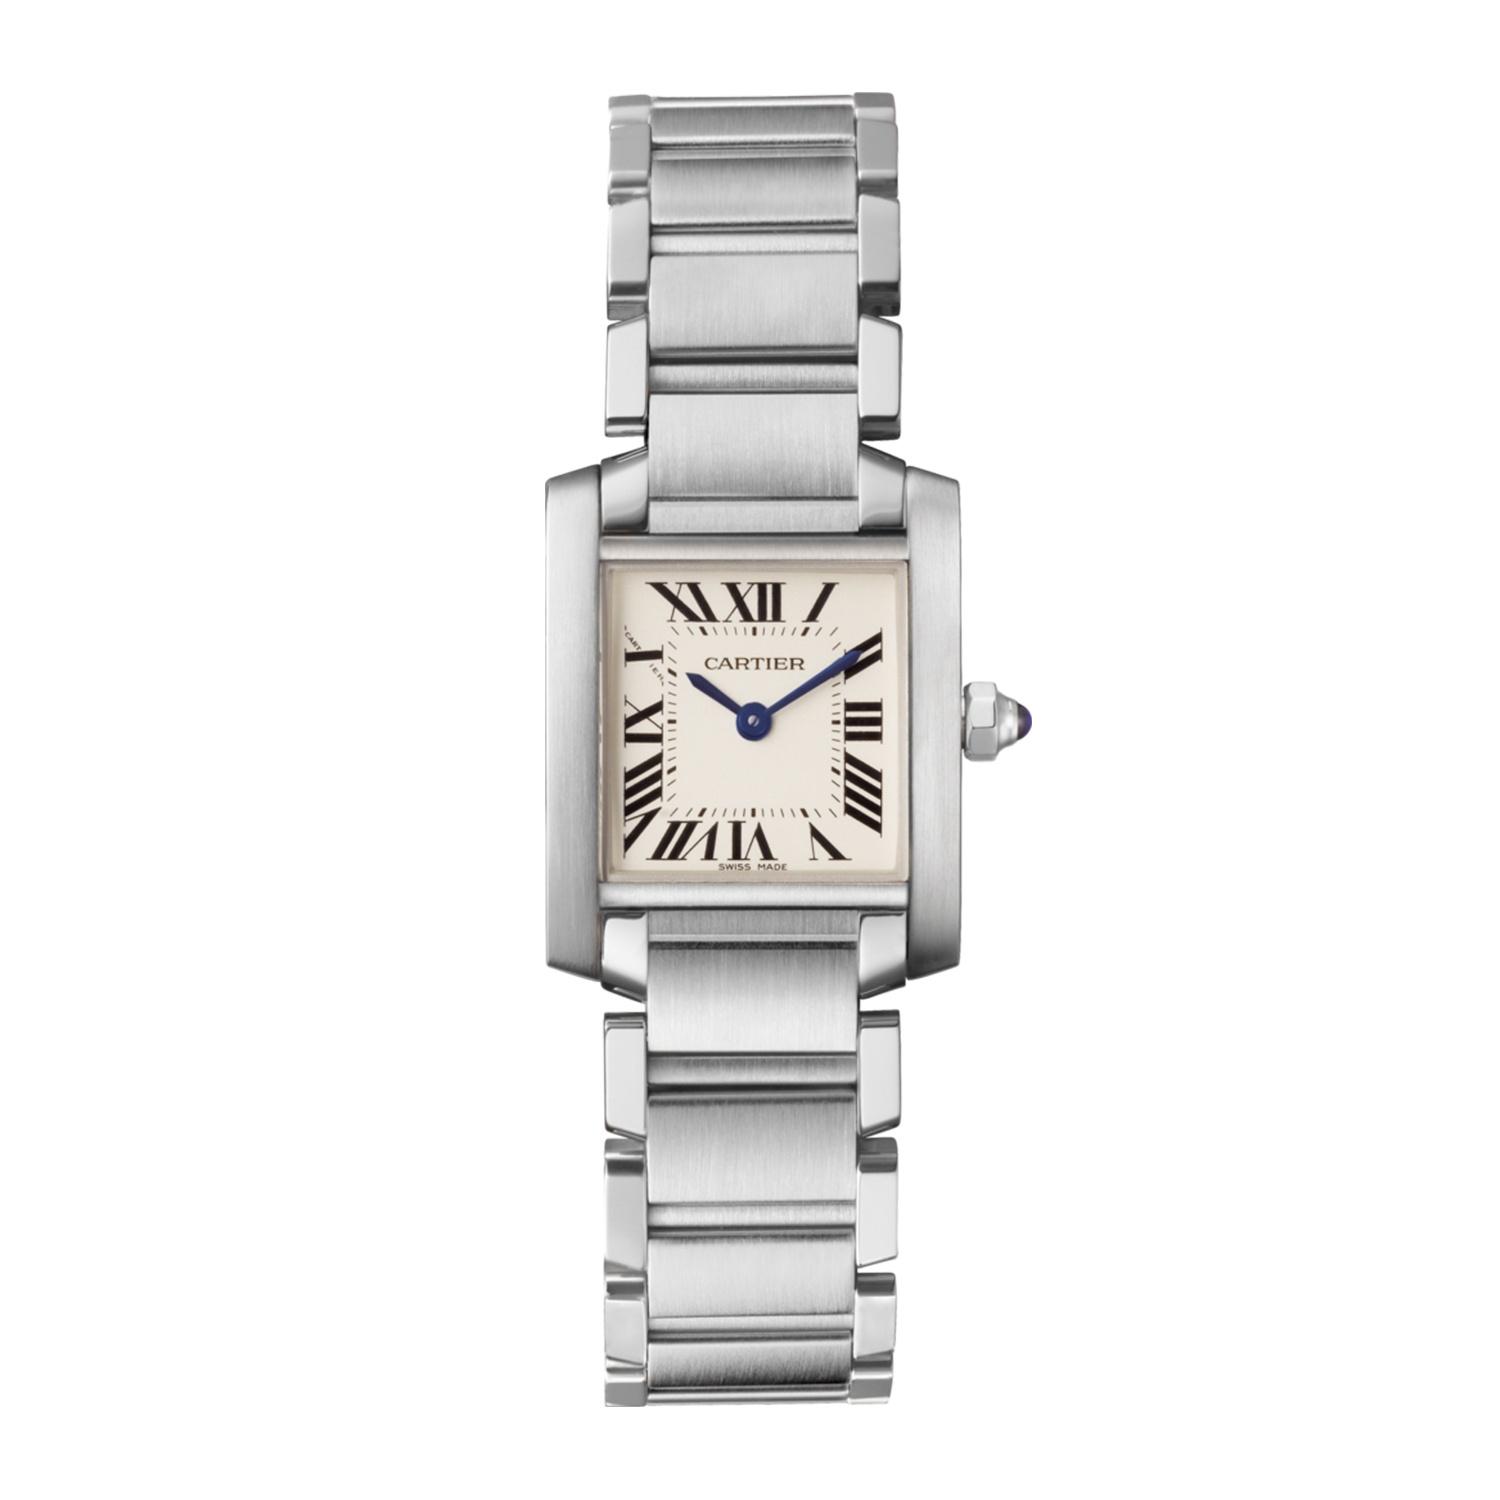 CartierTank Francaise Watch